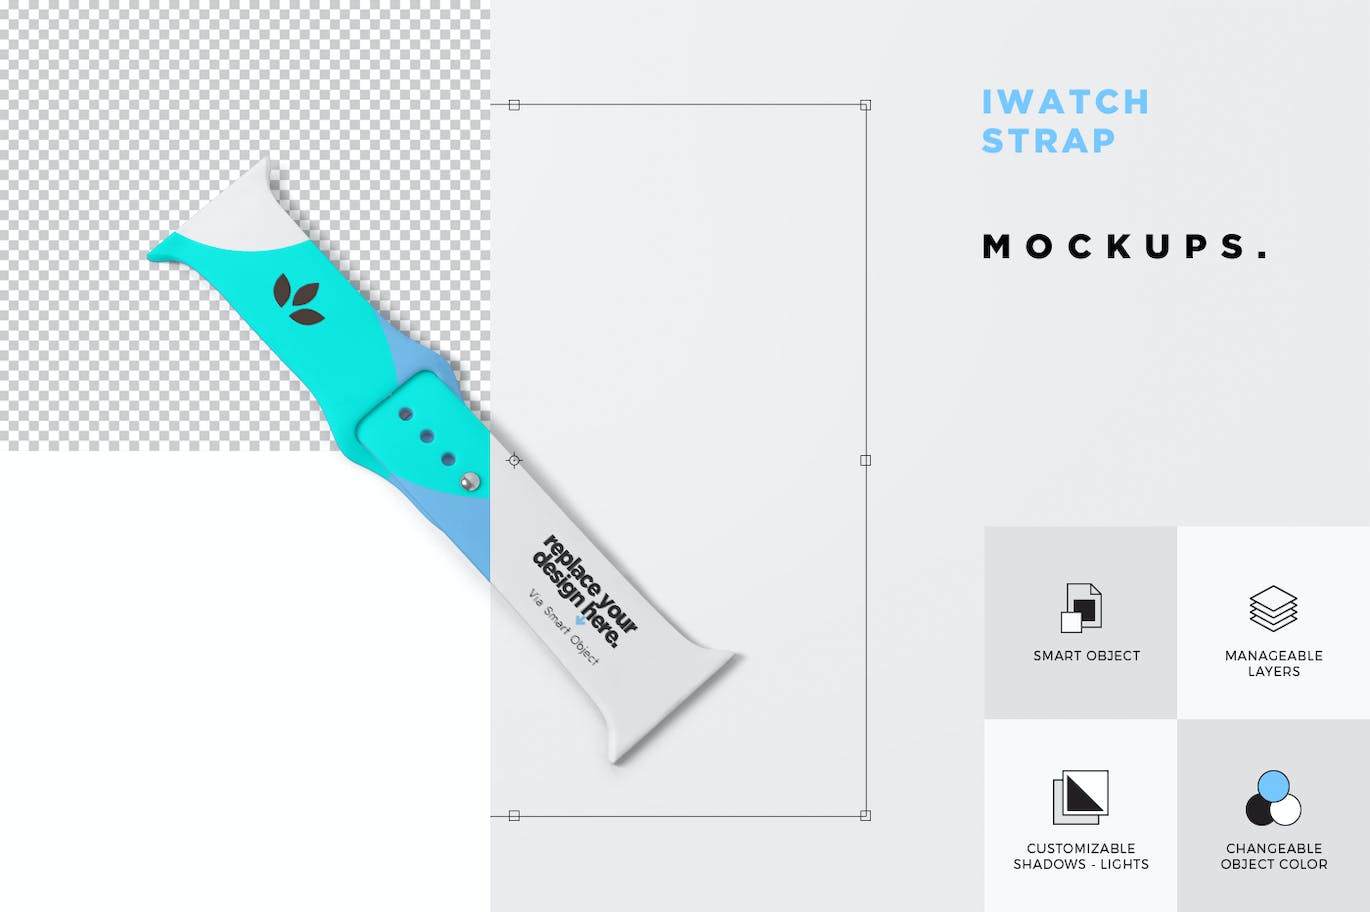 iWatch橡胶表带品牌设计样机 iWatch Rubber Strap Mockups 样机素材 第6张